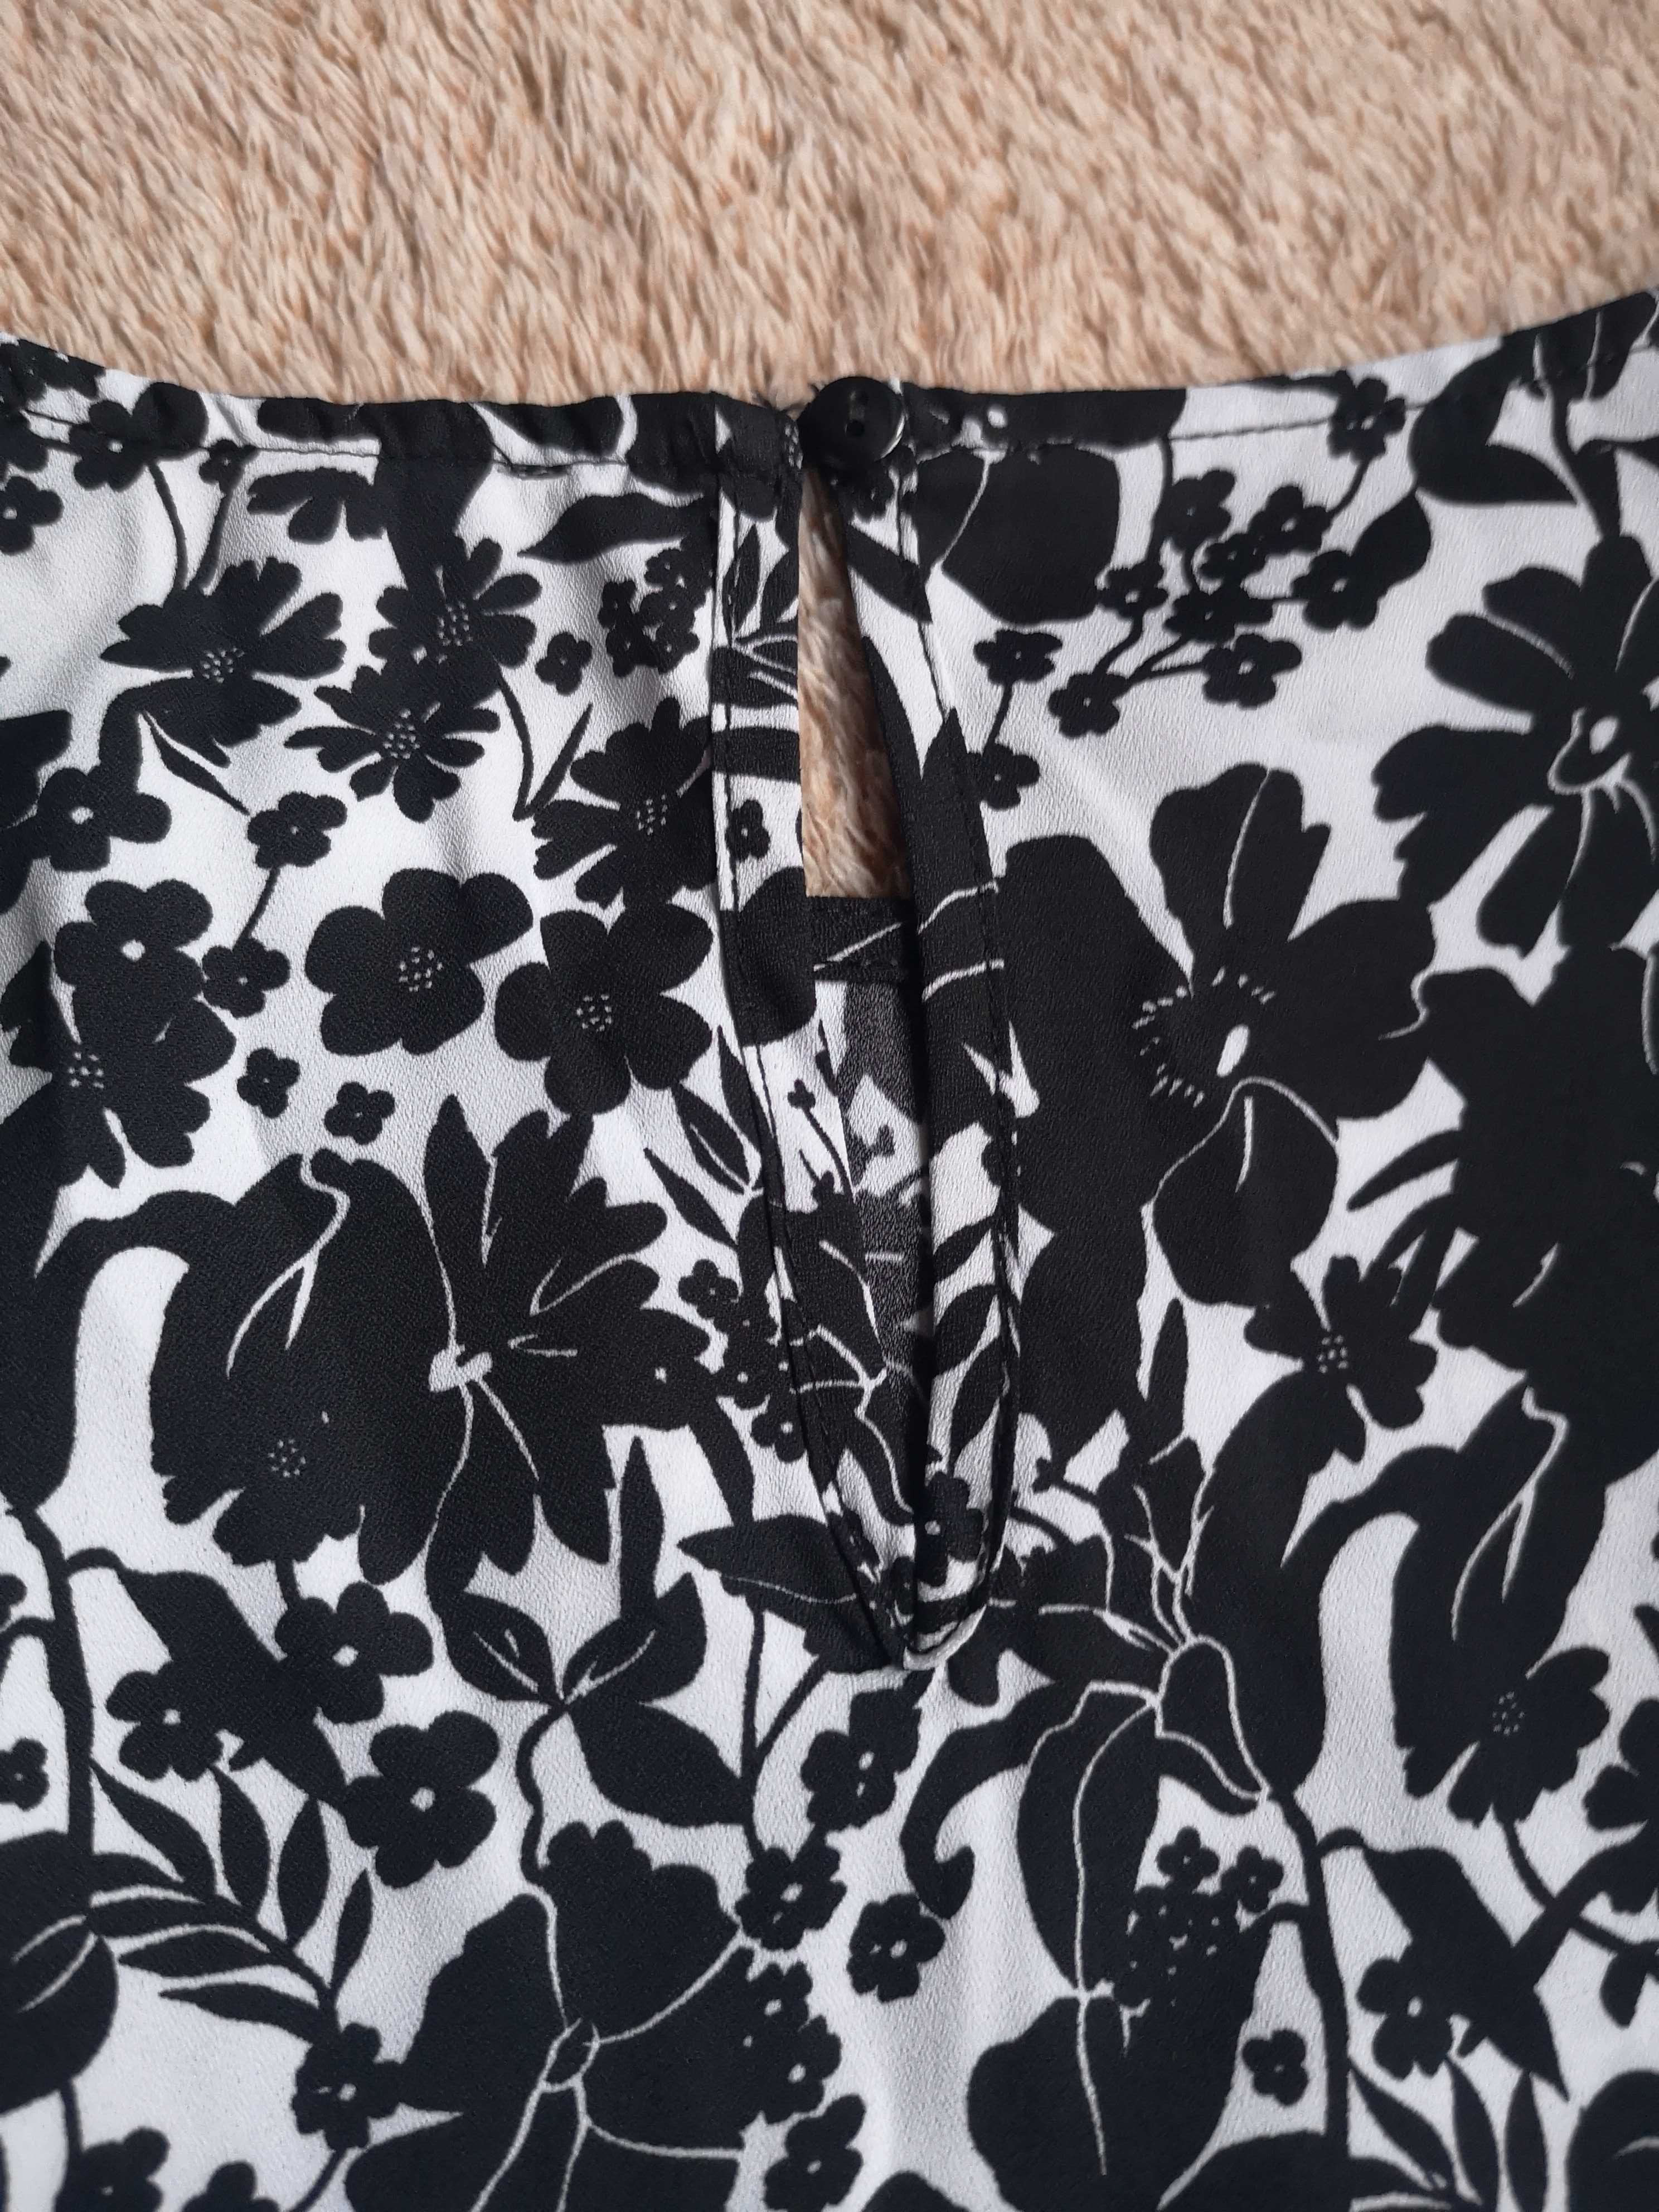 Bluzka czarno-biała kwiaty Mohito r. 36